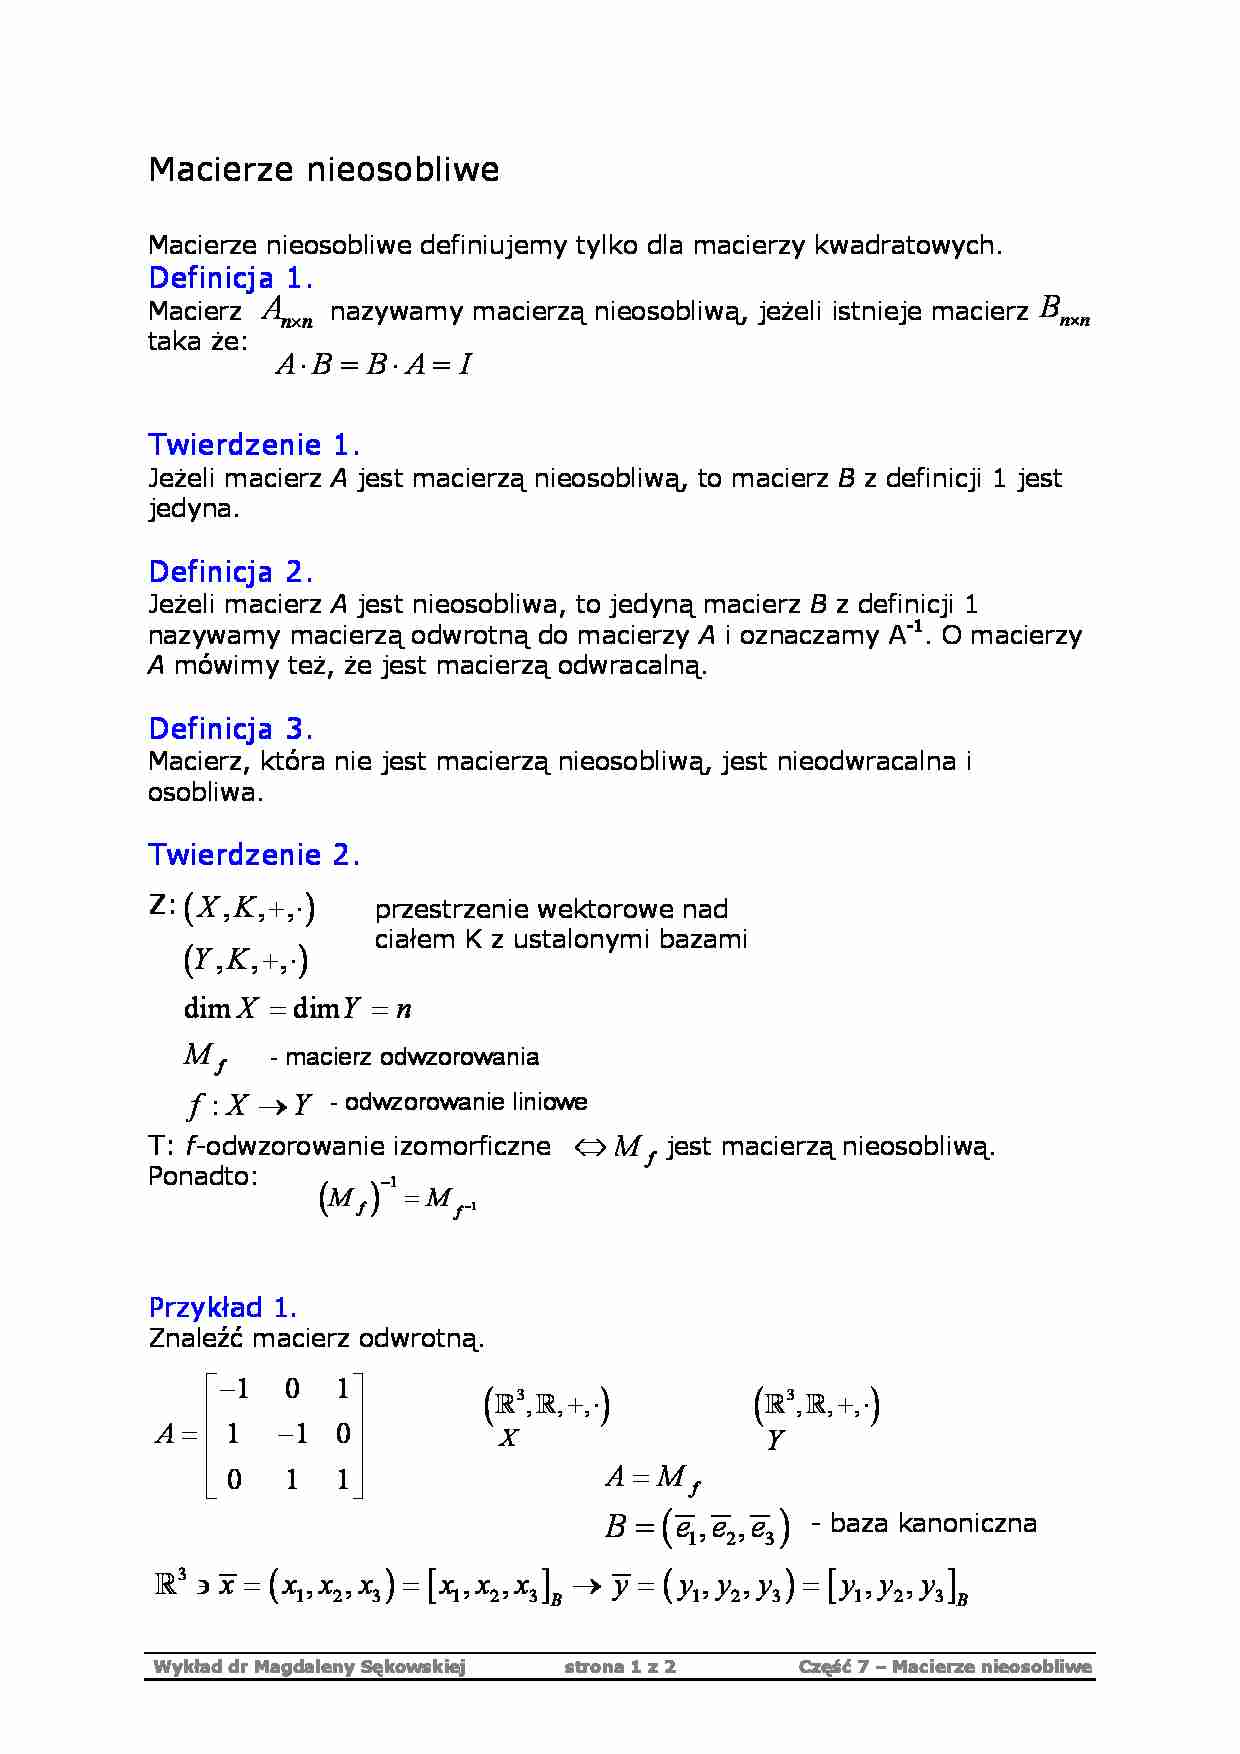 Macierze nieosobliwe - algebra - strona 1